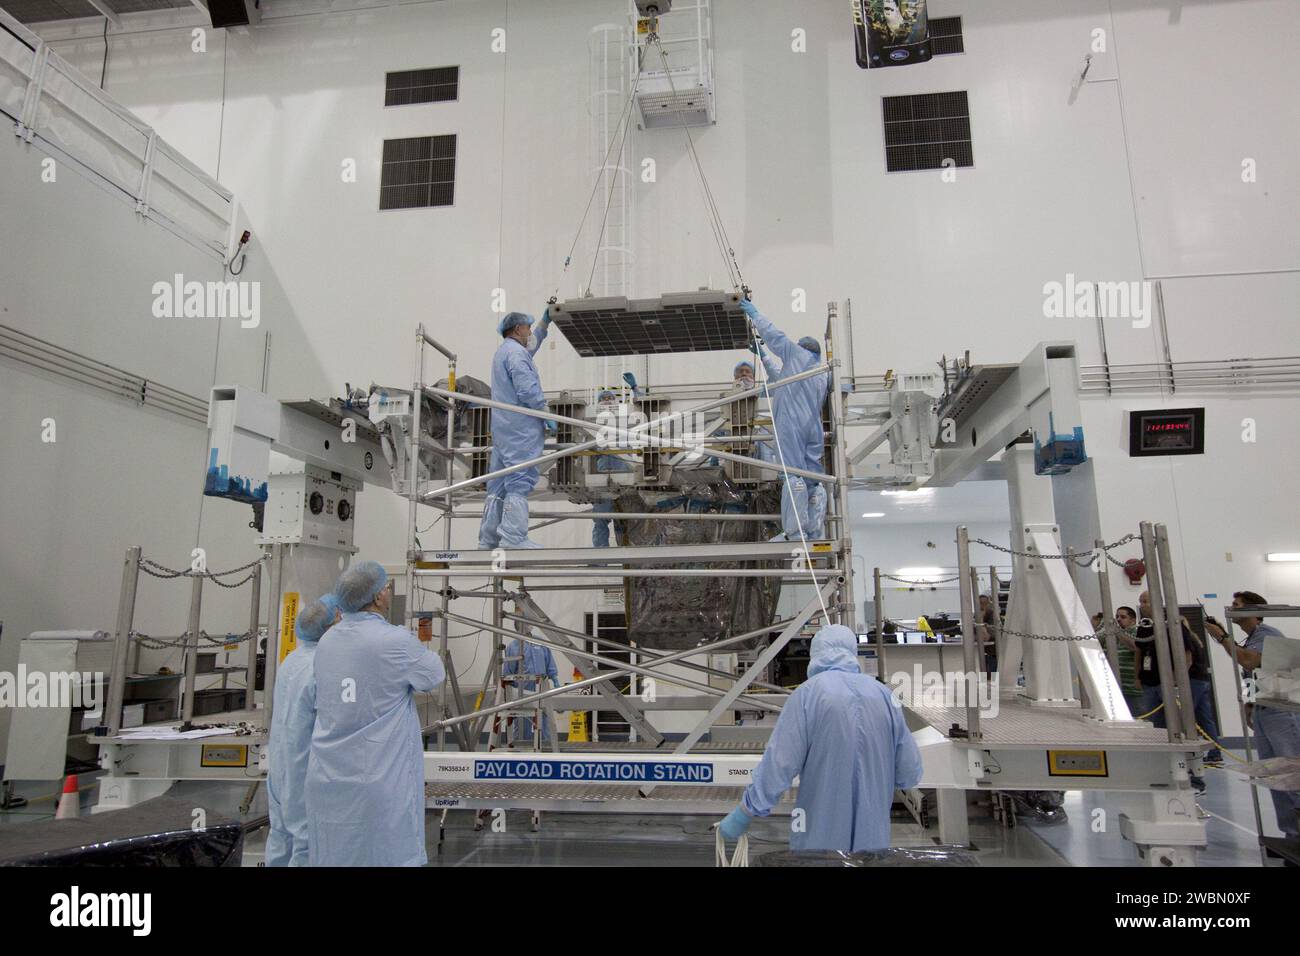 CAPE CANAVERAL, Fla. - In der Raumstation-Verarbeitungsanlage im Kennedy Space Center der NASA in Florida führen Techniker einen Überkopfkran, während er die Montageplatte des Pumpenmoduls in Richtung des leichten Mehrzweck-Experiment Support Structure Carrier (LMC) senkt. Die Modulbaugruppe wird verwendet, um die Rückführung eines defekten Ammoniakpumpenmoduls im Nutzlastbereich des Shuttle Atlantis zu sichern. Atlantis und seine Nutzlast werden für die Mission STS-135 vorbereitet, die das Multifunktions-Logistikmodul Raffaello mit Vorräten, Logistik und Ersatzteilen an die International Space Sta liefern wird Stockfoto